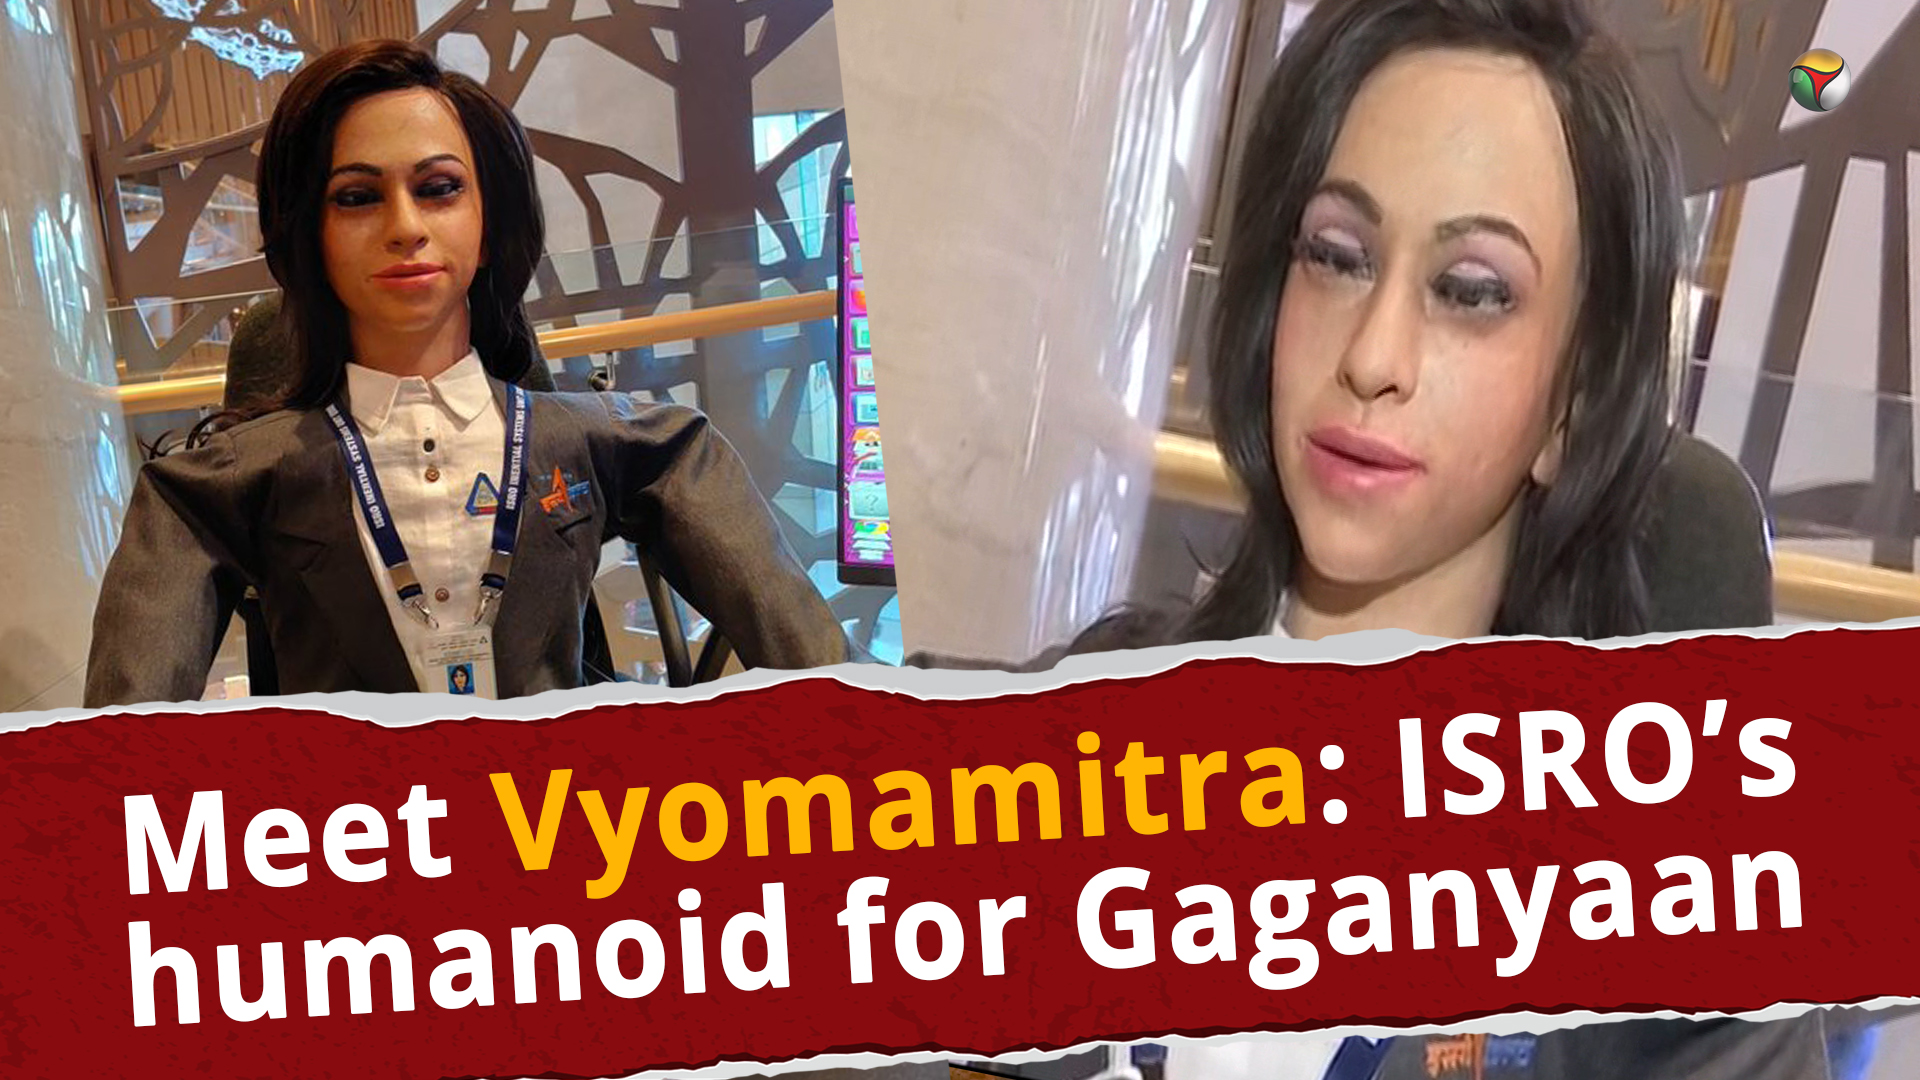 Meet Vyomamitra: ISRO’s humanoid for Gaganyaan